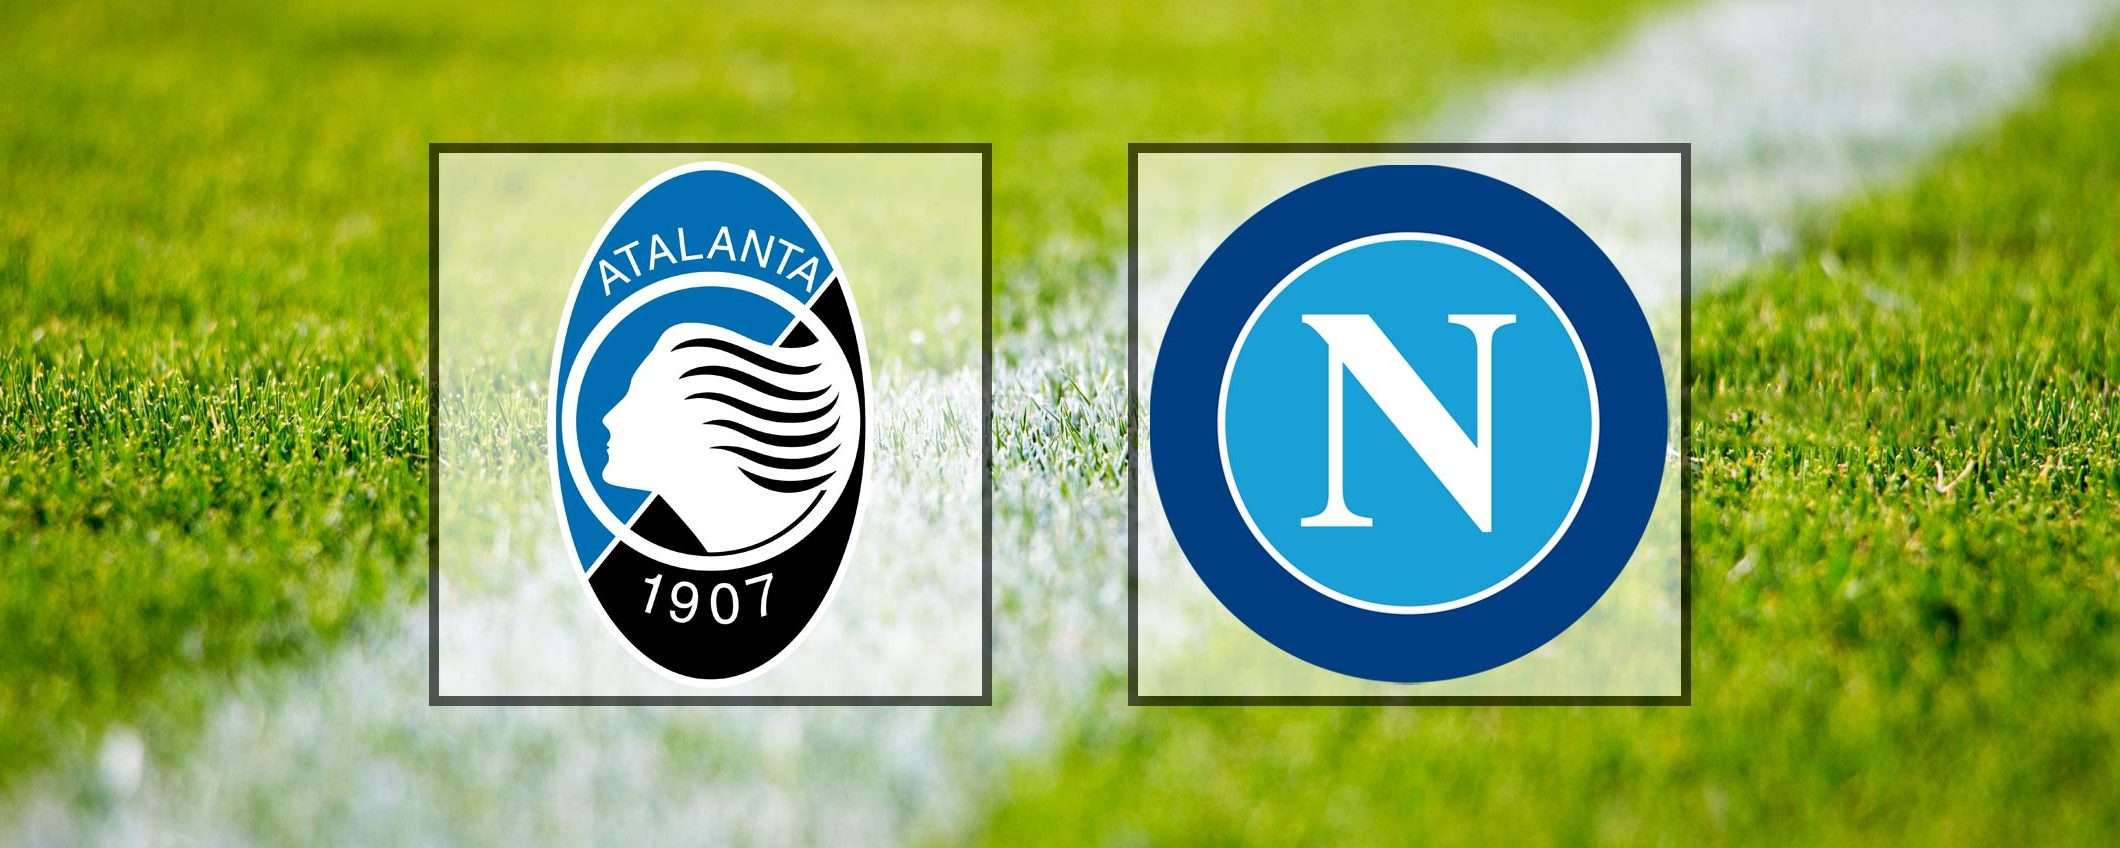 Come vedere Atalanta-Napoli in streaming (Serie A)